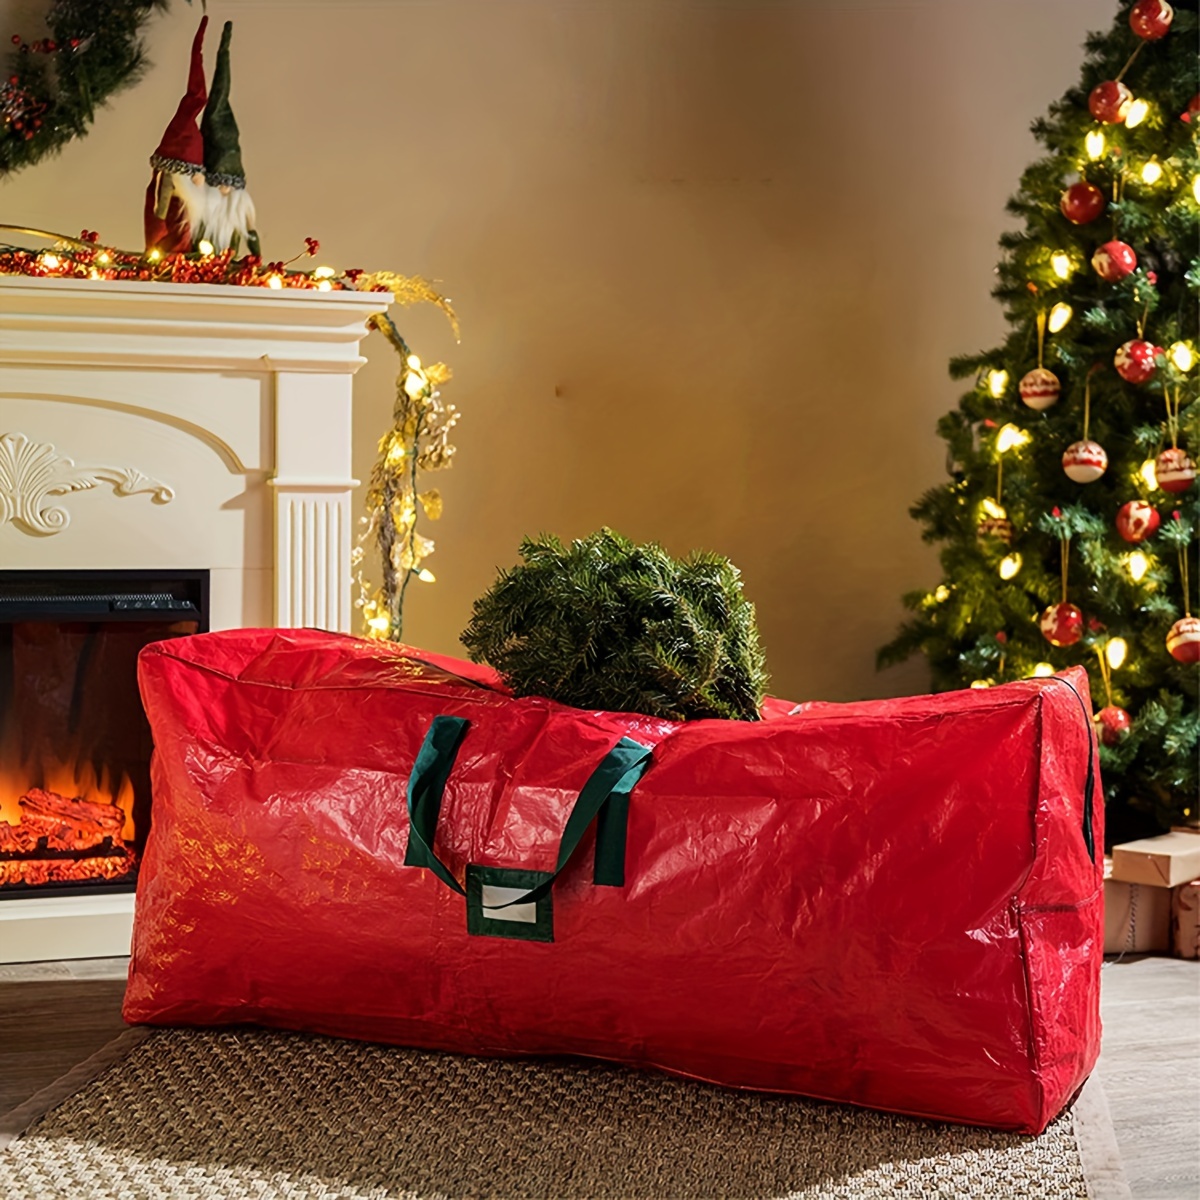  HOLIDAY SPIRIT Bolsa de almacenamiento para árbol de Navidad –  Bolsa resistente para árbol con asas reforzadas duraderas y cremallera,  bolsa de almacenamiento impermeable que protege de la humedad y 